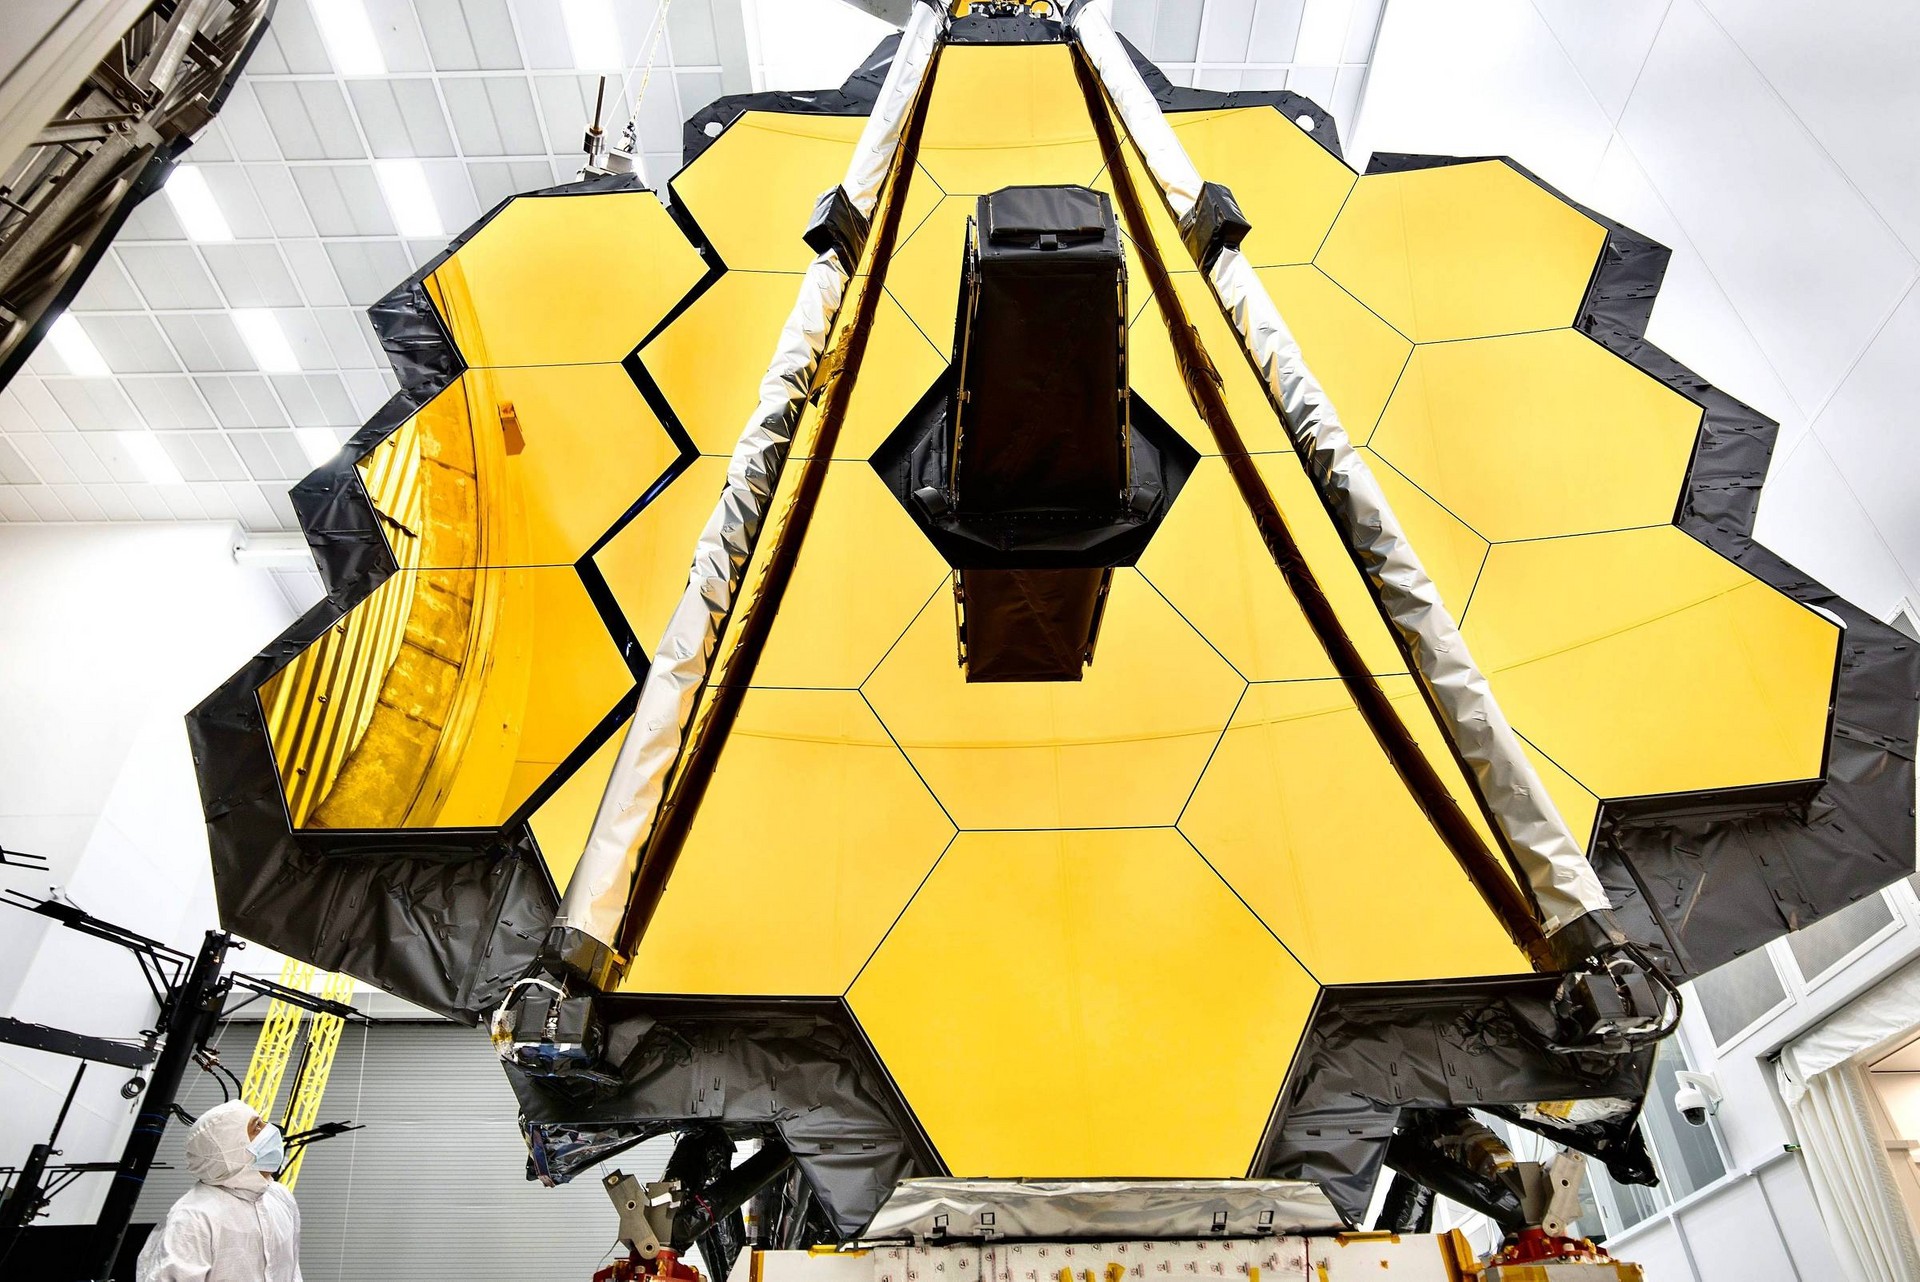 Telescpio James Webb da NASA se desdobrar como um origami no espao nas prximas semanas